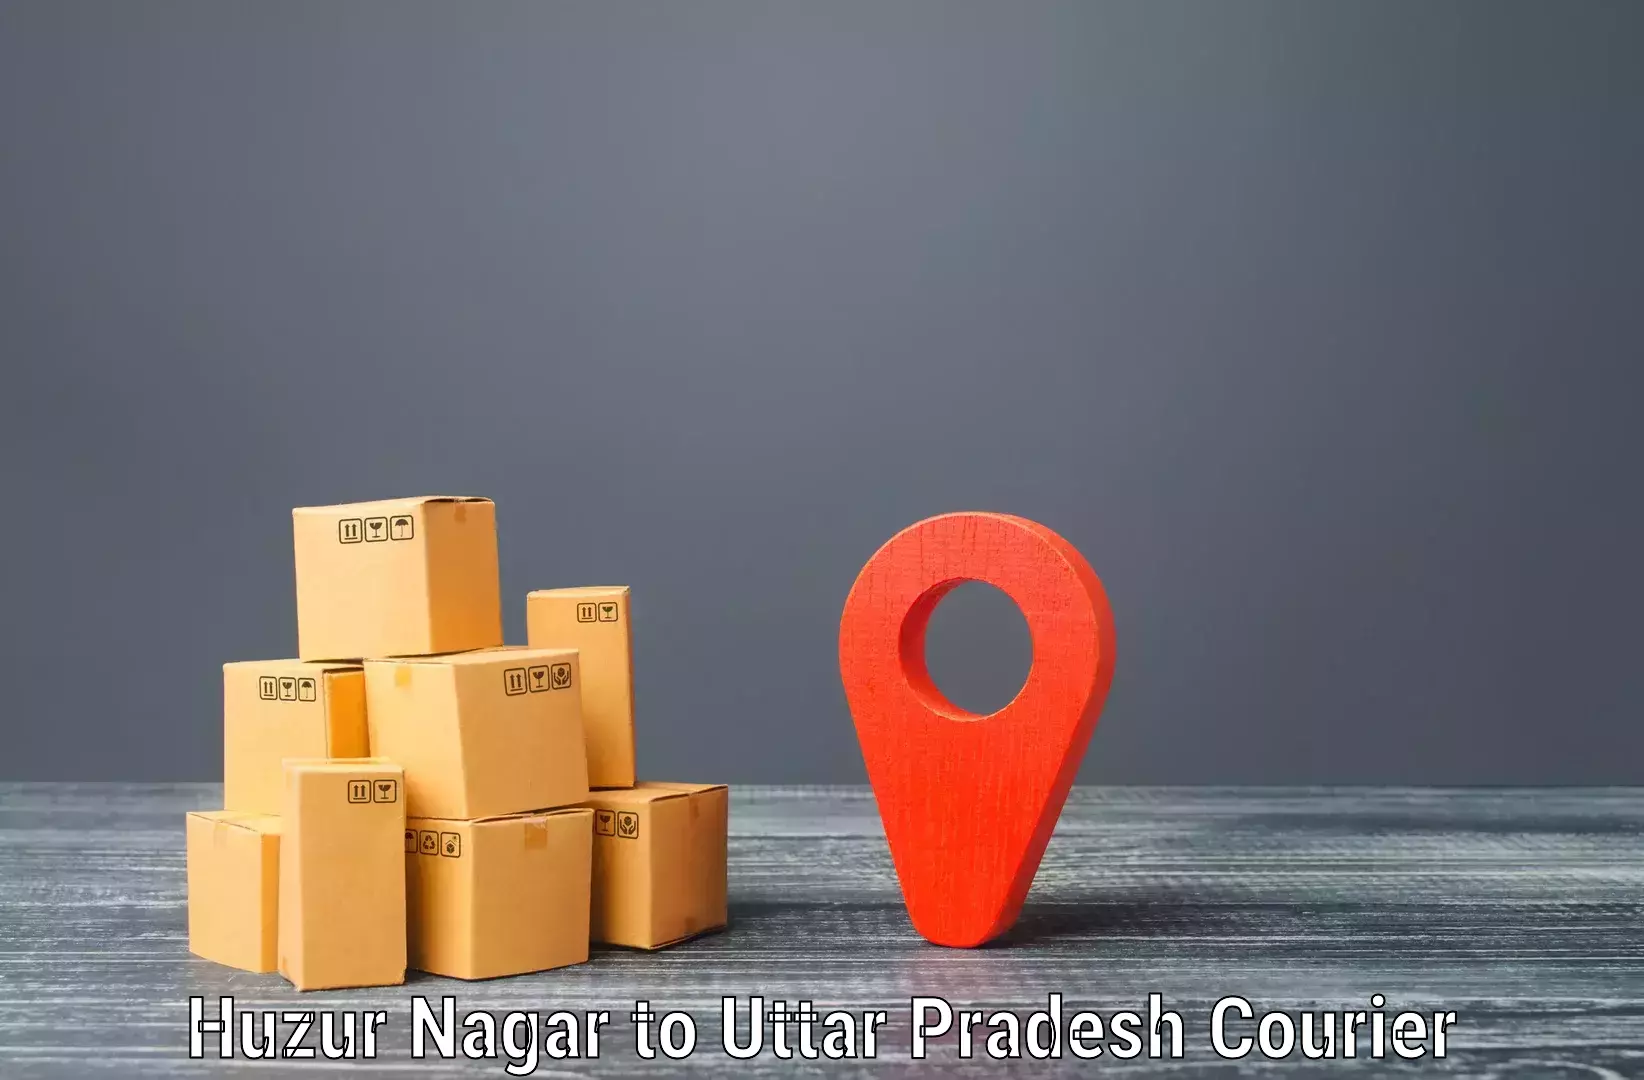 Lightweight parcel options Huzur Nagar to Bijpur